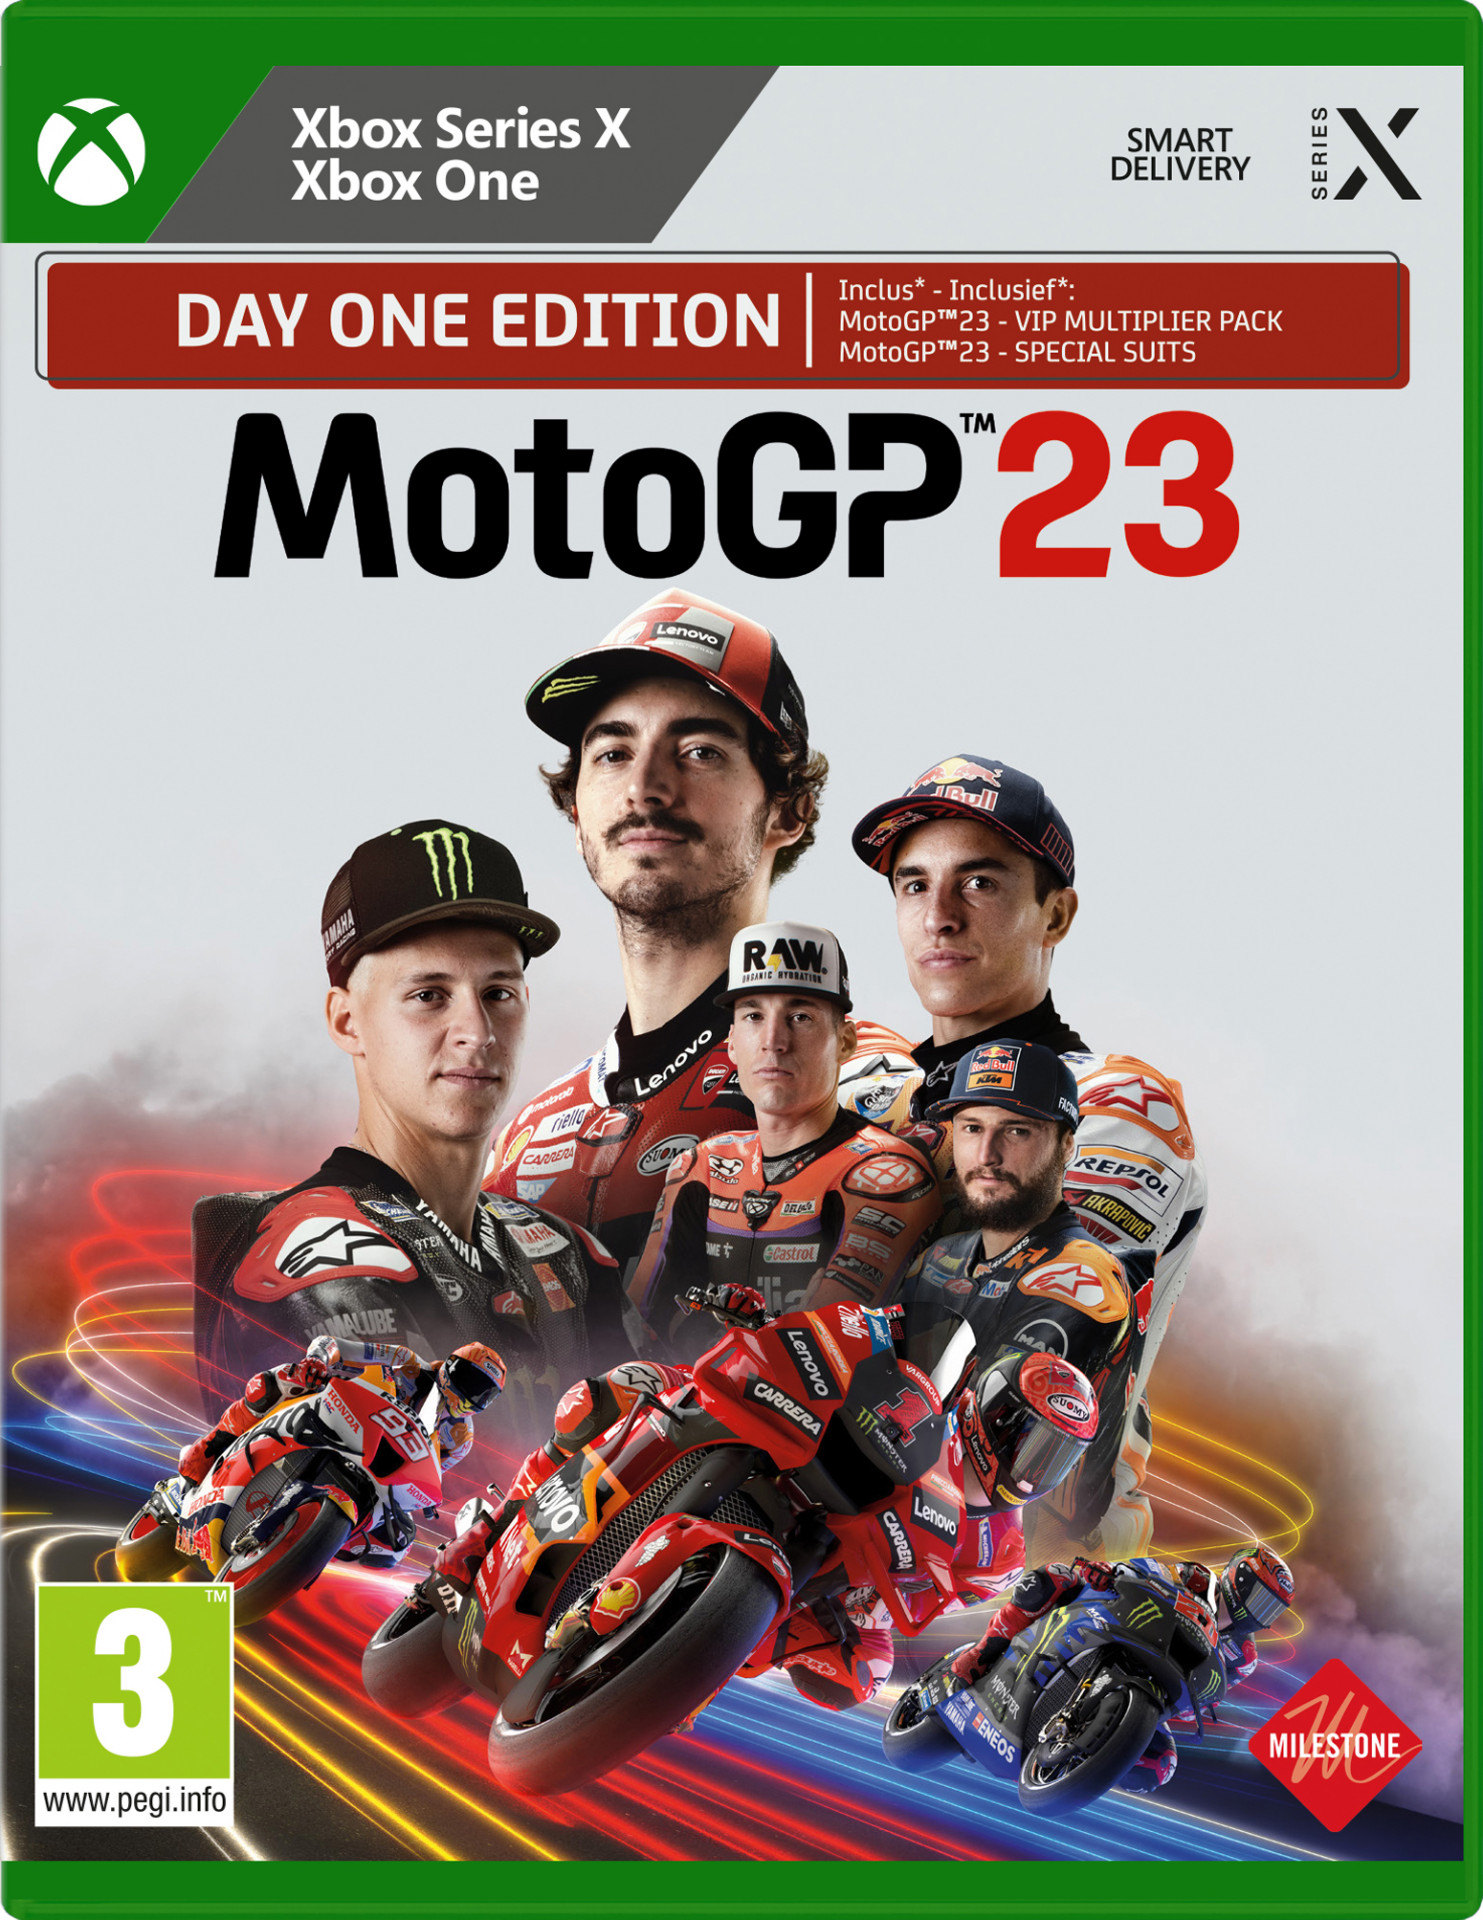 MotoGP 23 (Xbox One), Milestone